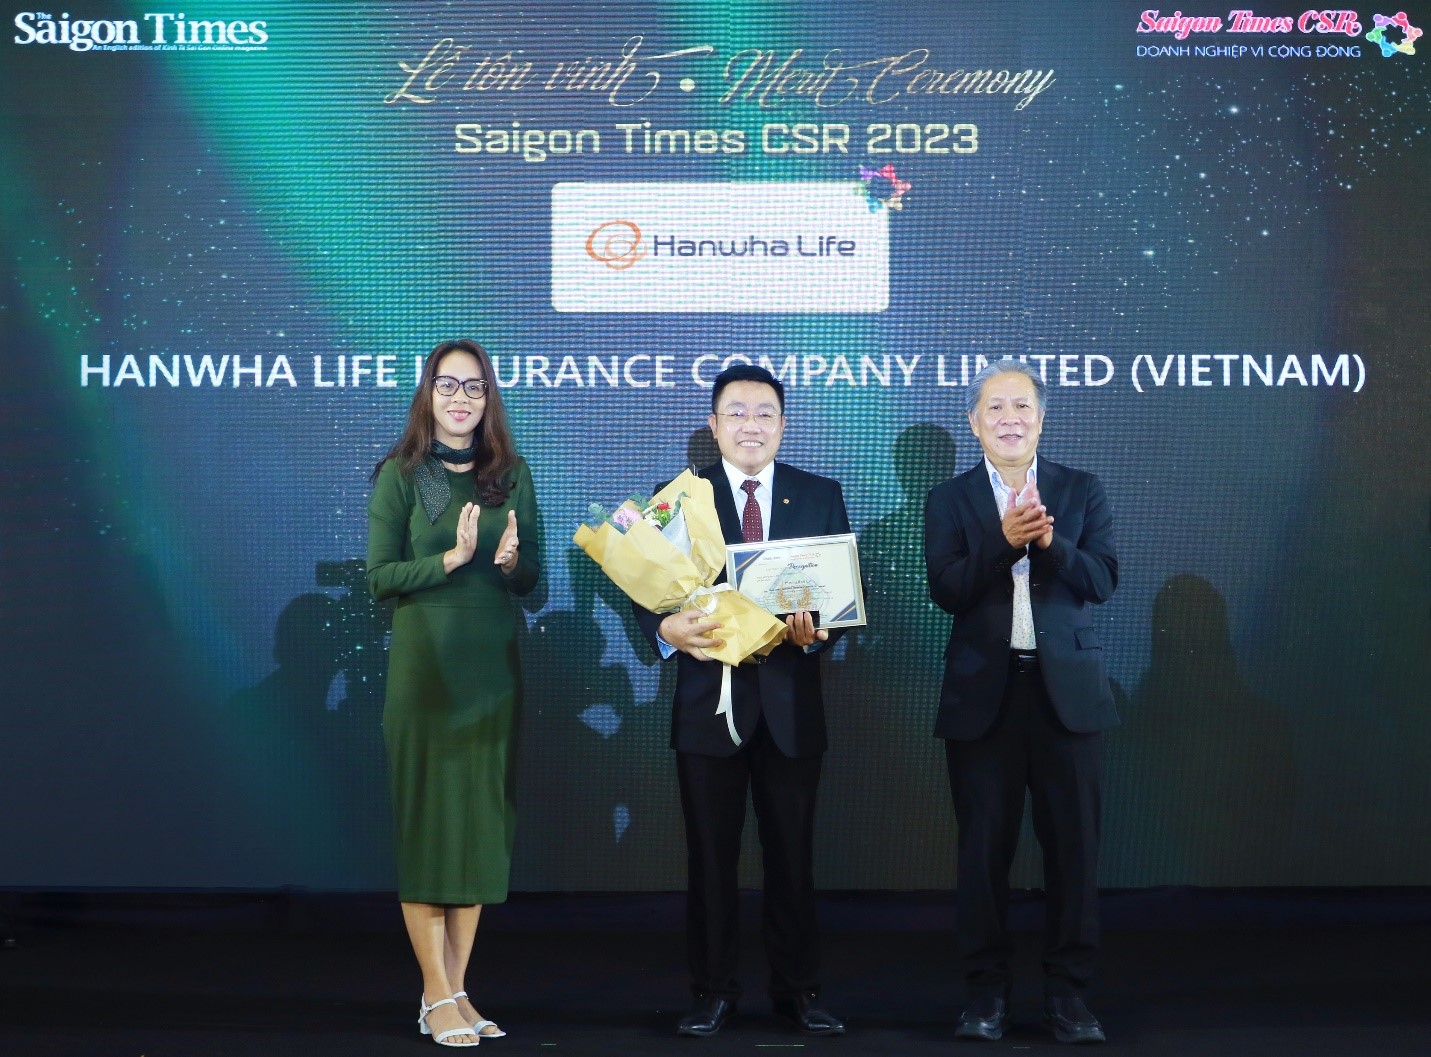 Ngày 15/11, Hanwha Life Việt Nam vinh dự nhận giải thưởng “Saigon Times CSR 2023 – Doanh nghiệp vì cộng đồng” do tạp chí The Saigon Times trao tặng. Giải thưởng này là minh chứng cho những đóng góp tích cực của công ty cho cộng đồng thông qua các hoạt động trách nhiệm xã hội (CSR). Đây là lần thứ 3 liên tiếp công ty đón nhận giải thưởng ý nghĩa này.